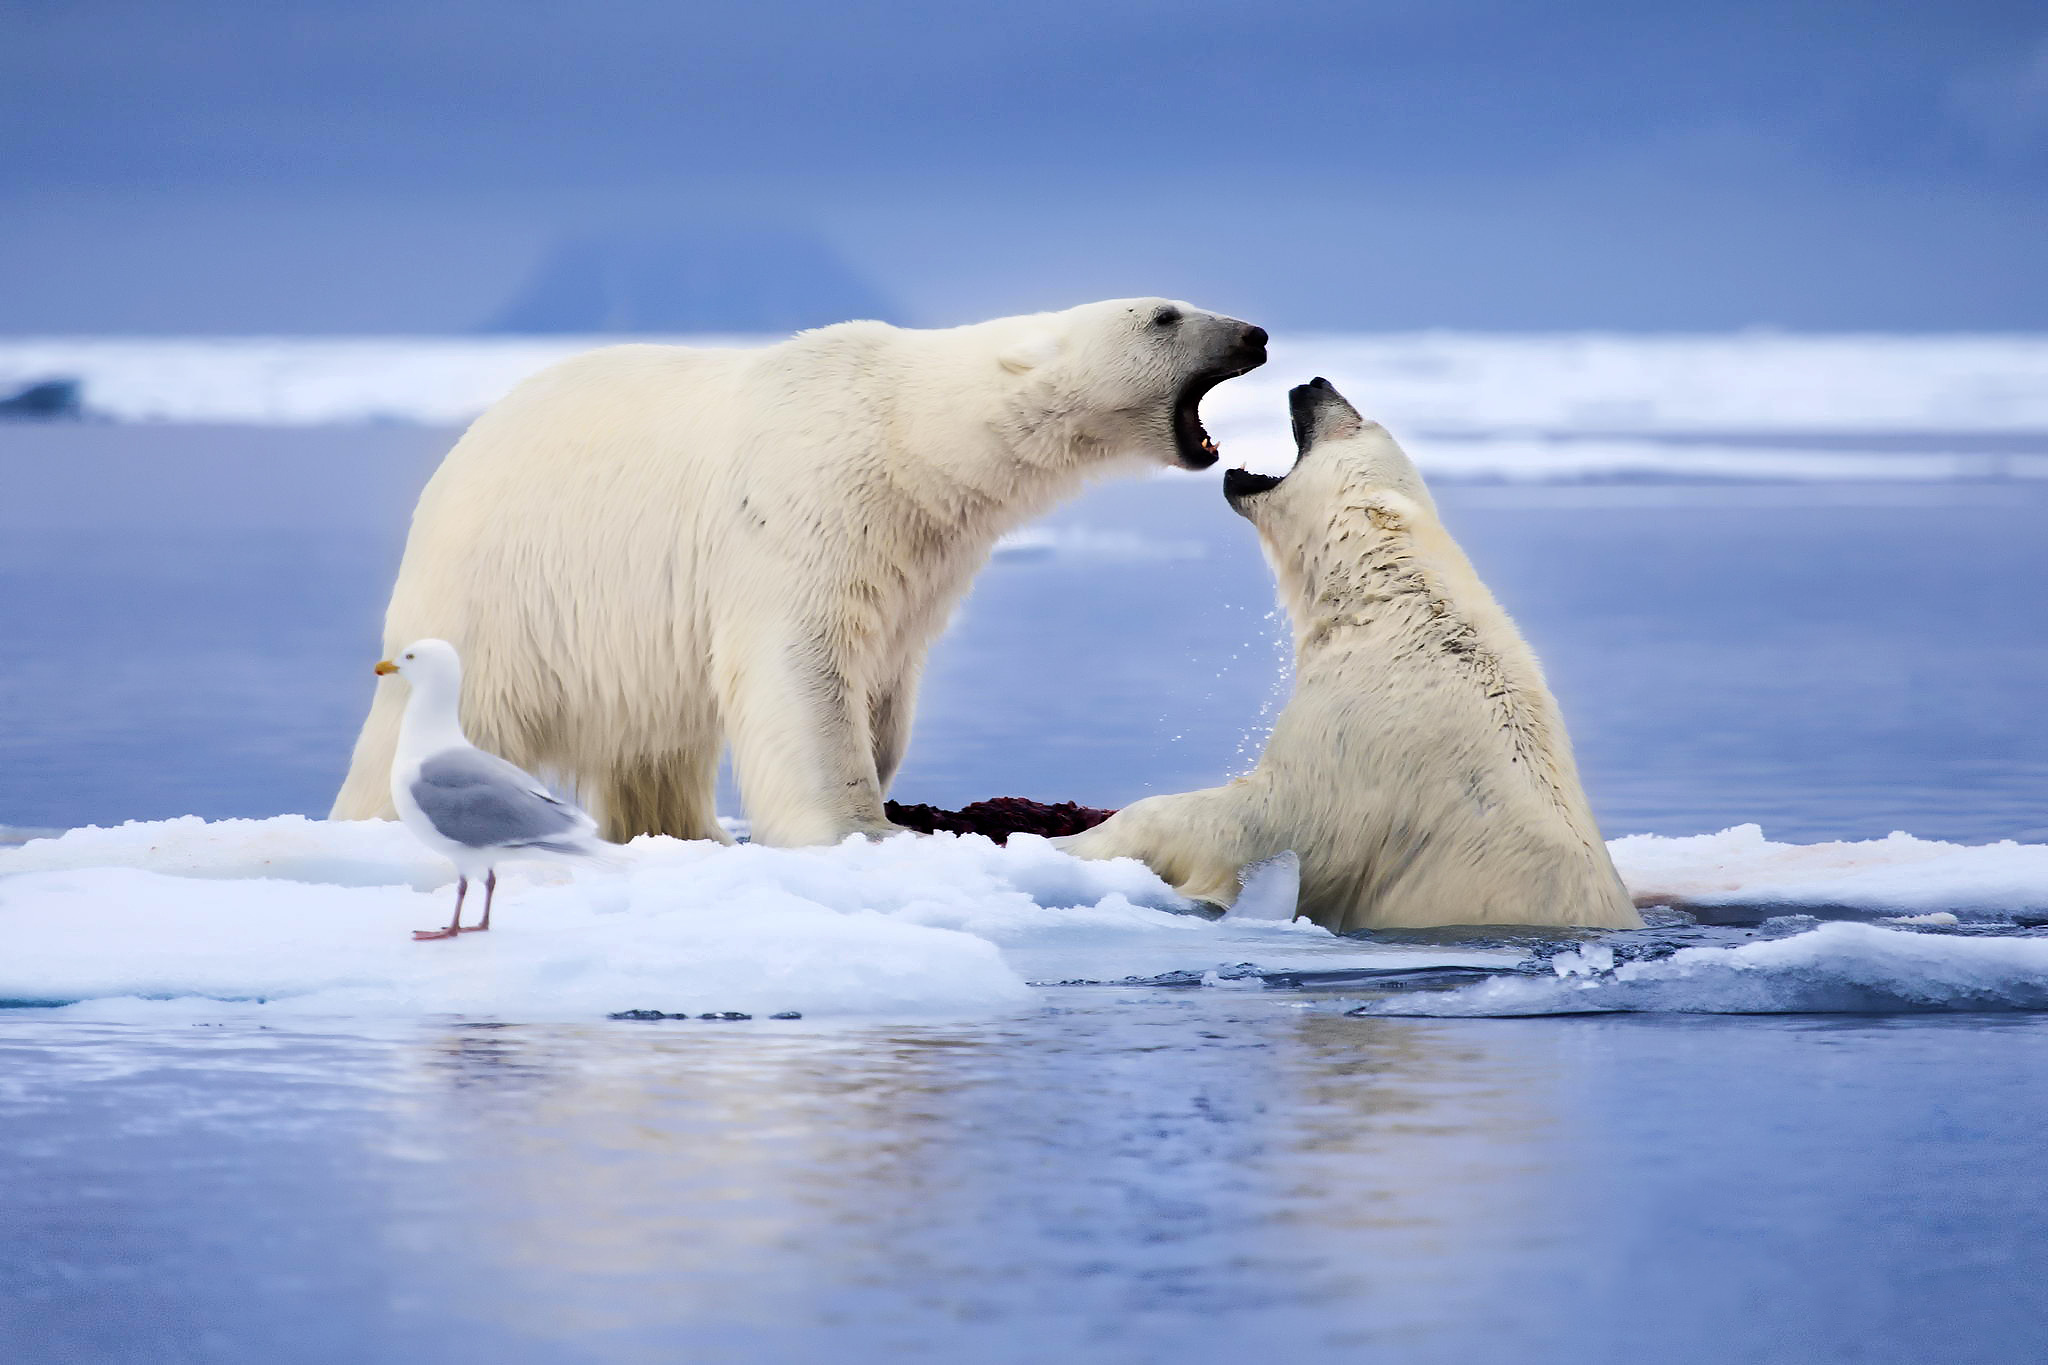 Америка белые медведи. Арктика – Антарктика белый медведь. Северный Ледовитый океан белый медведь. Животные Арктики белый медведь. Арктика природа и животные.